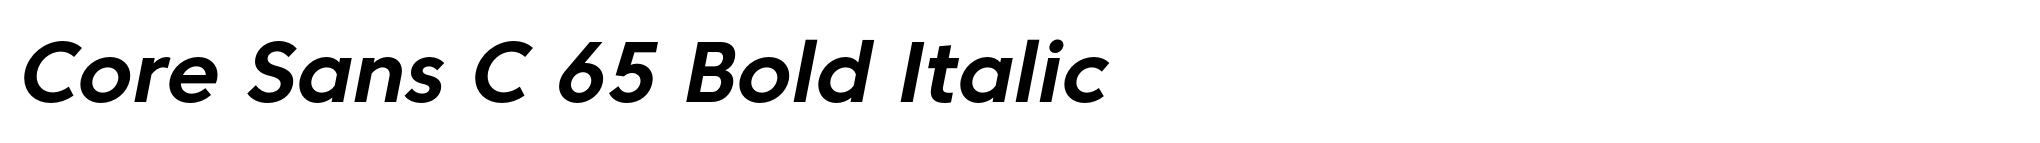 Core Sans C 65 Bold Italic image